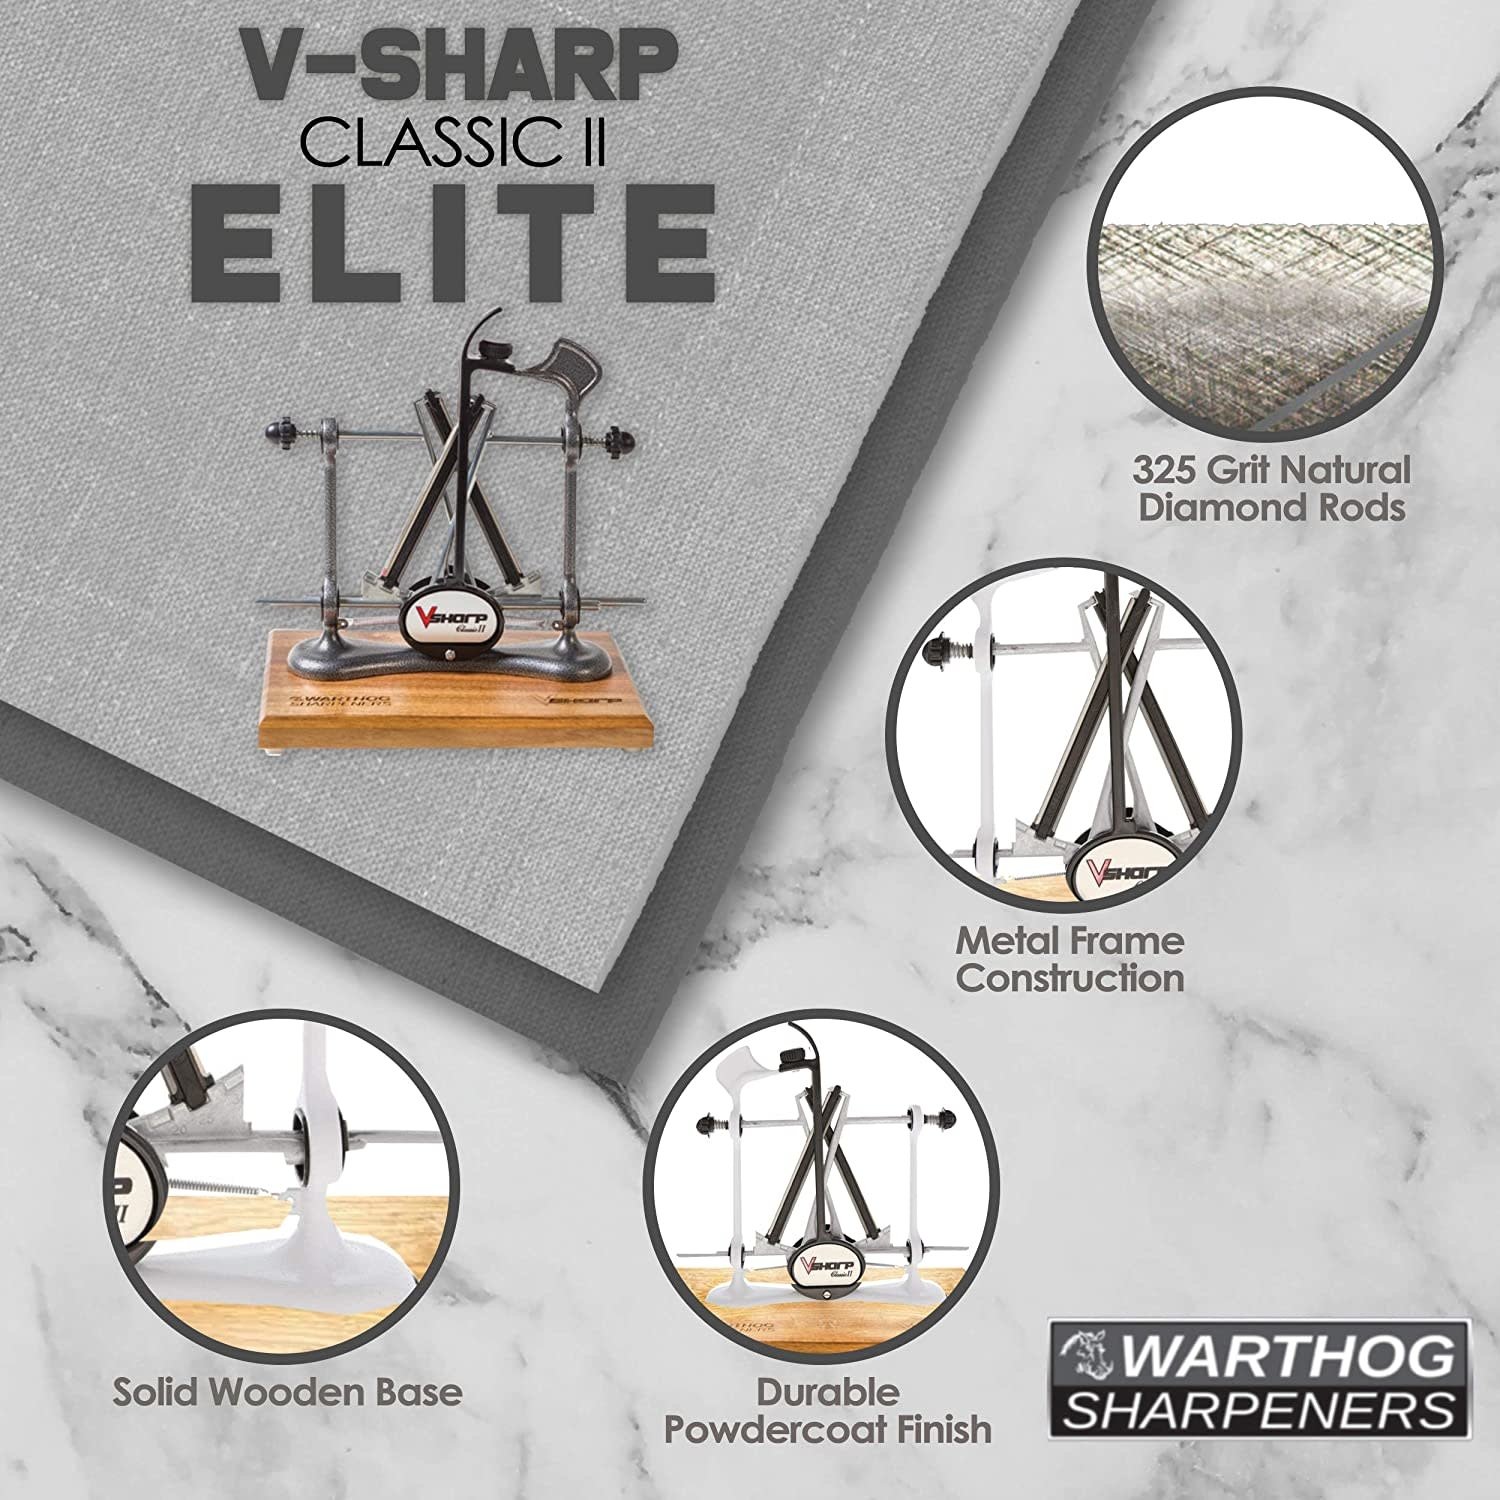 Warthog V-Sharp Classic II - Elite